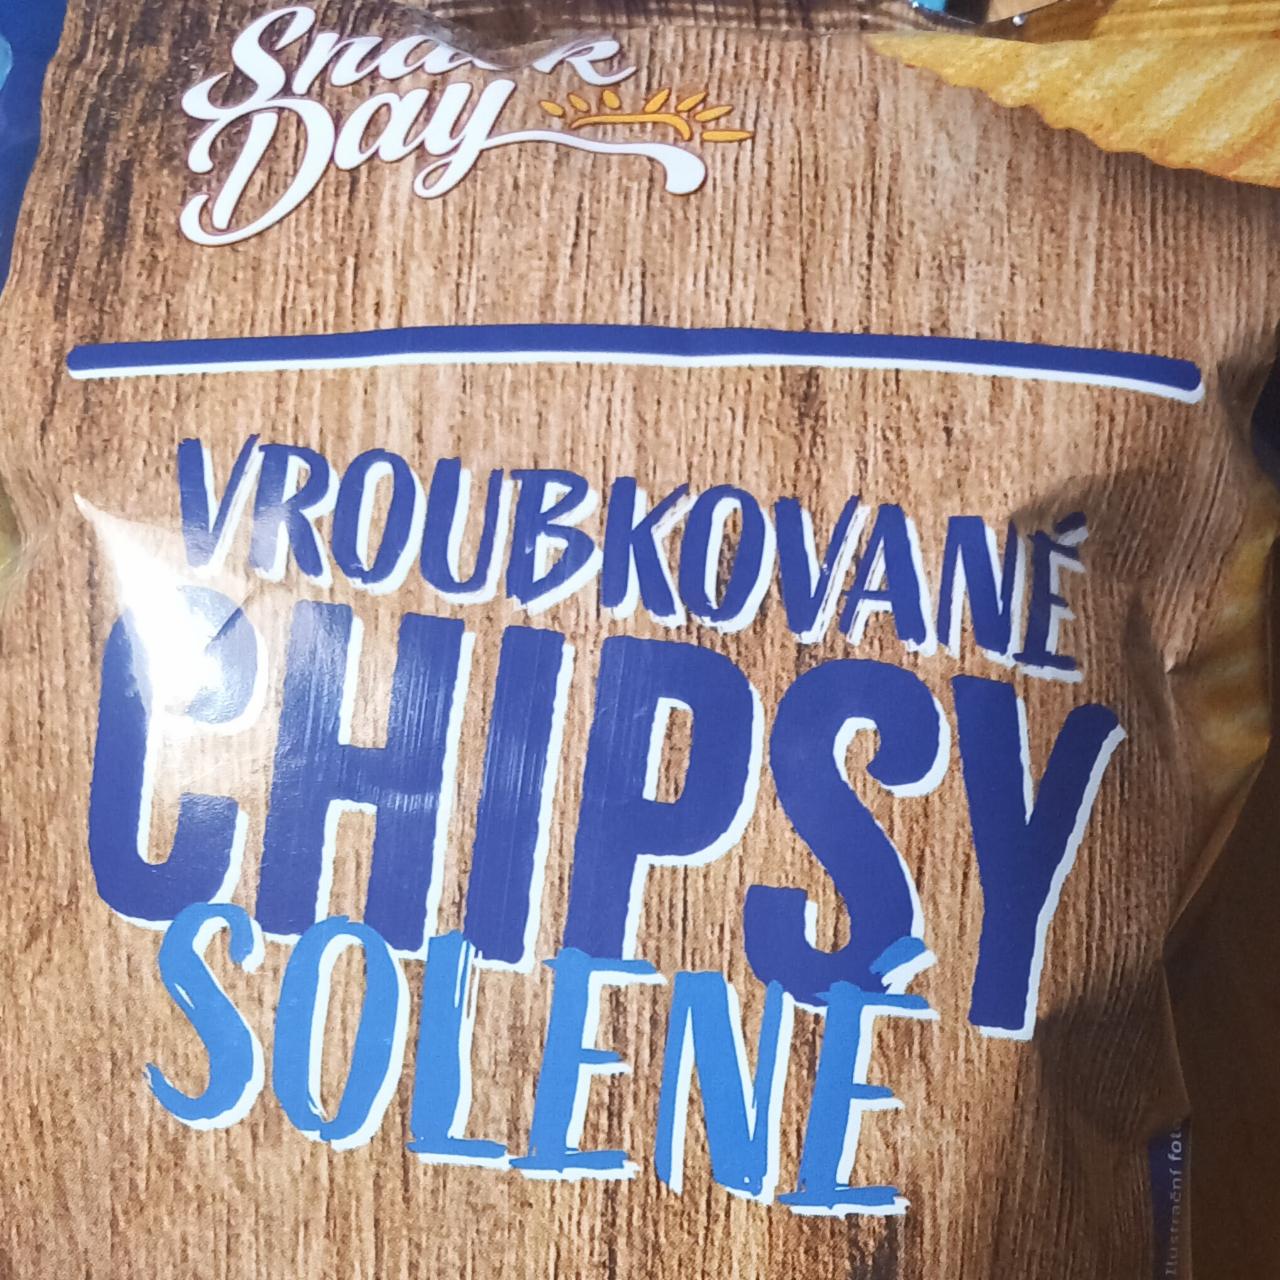 Fotografie - vroubkované chipsy solené Snack Day